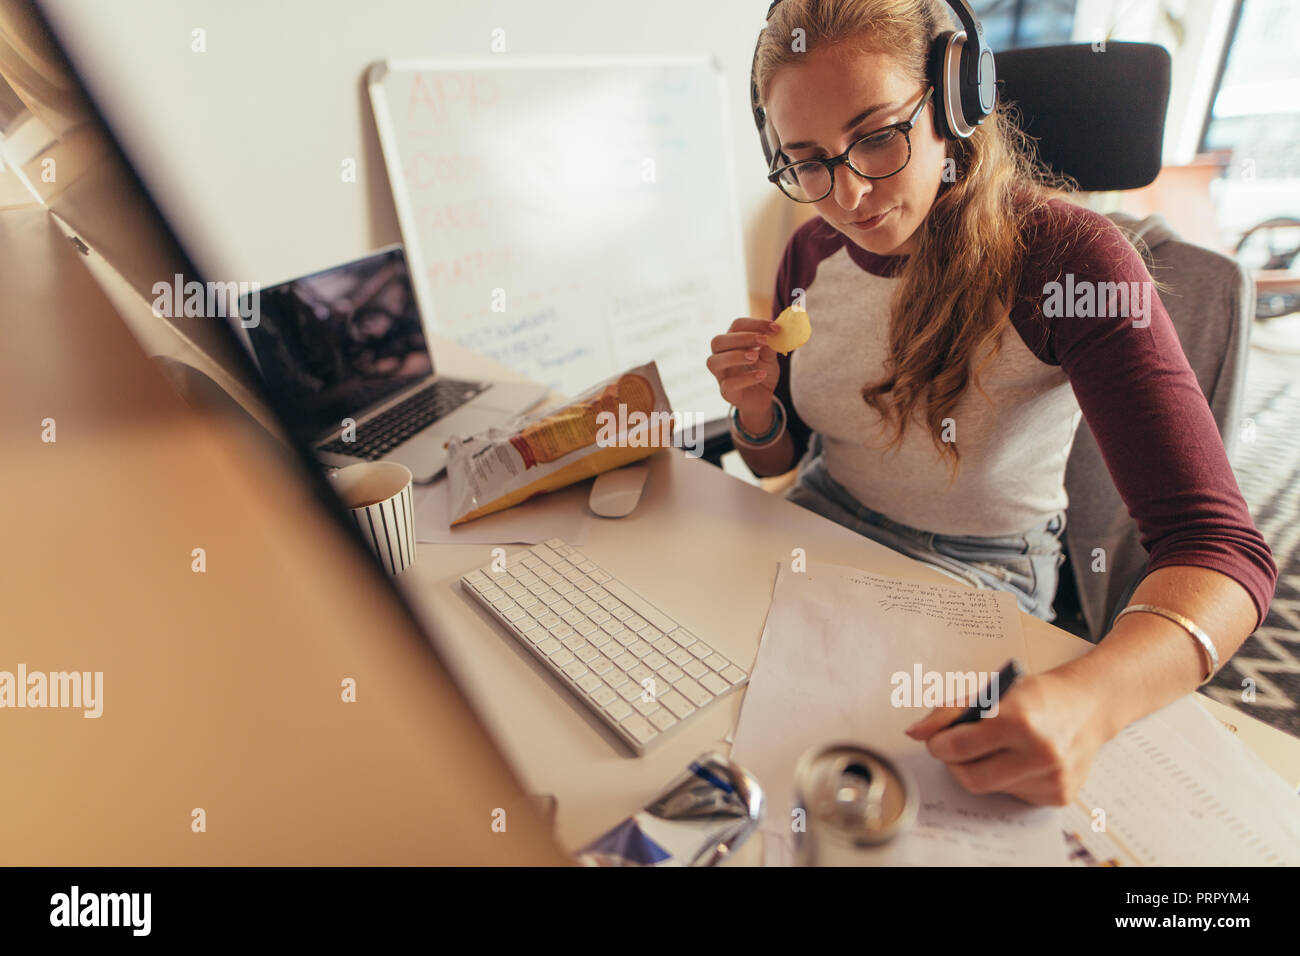 Frau schreiben Programm Codes auf Papier und Essen. Weibliche coder Arbeiten auf die Entwicklung neuer Software bei tech Startup im Büro. Stockfoto